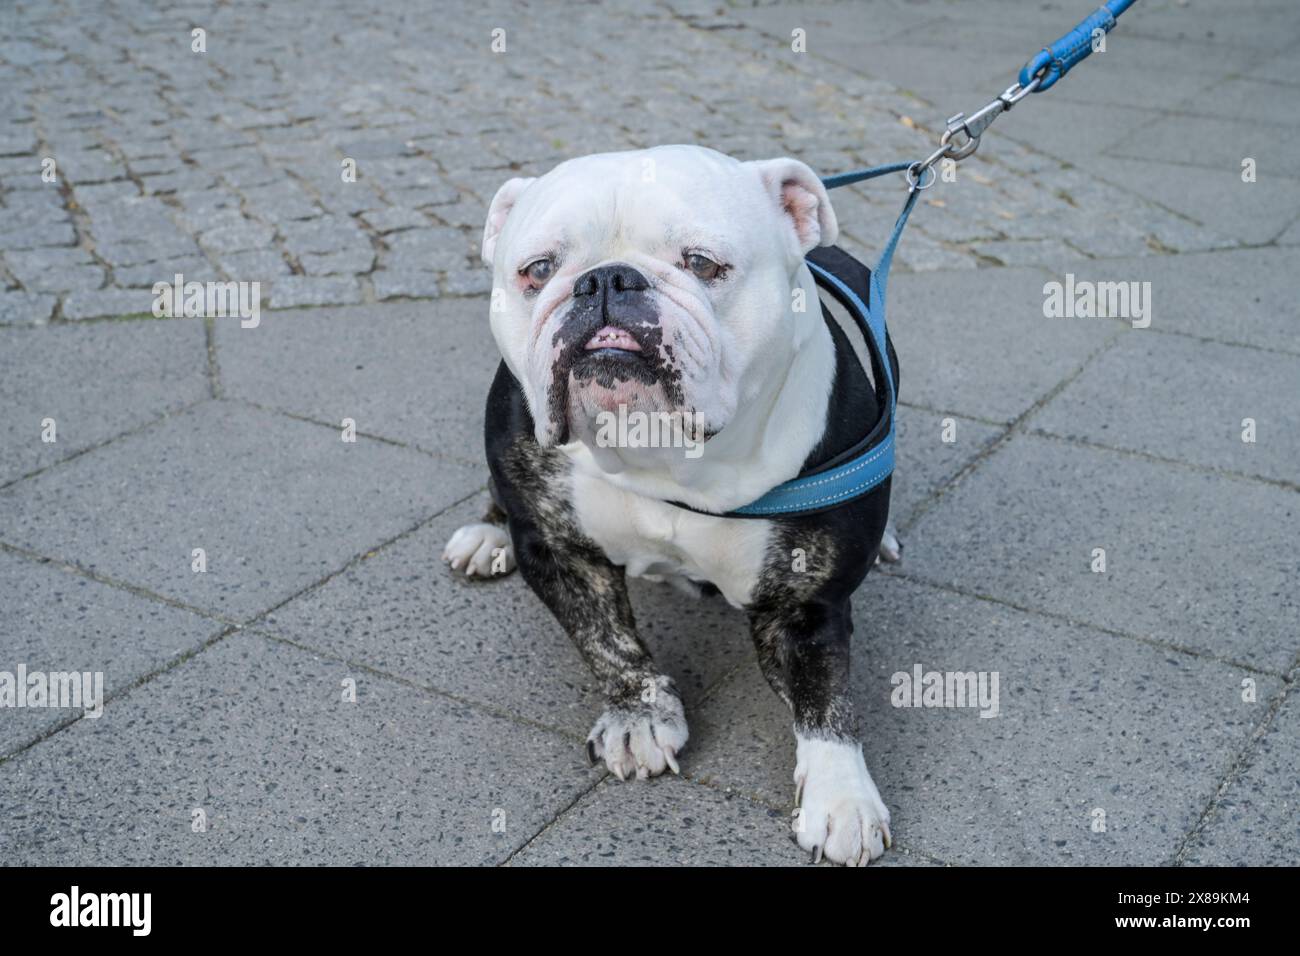 Alter Hund, englische Bulldogge, Berlin, Deutschland Banque D'Images